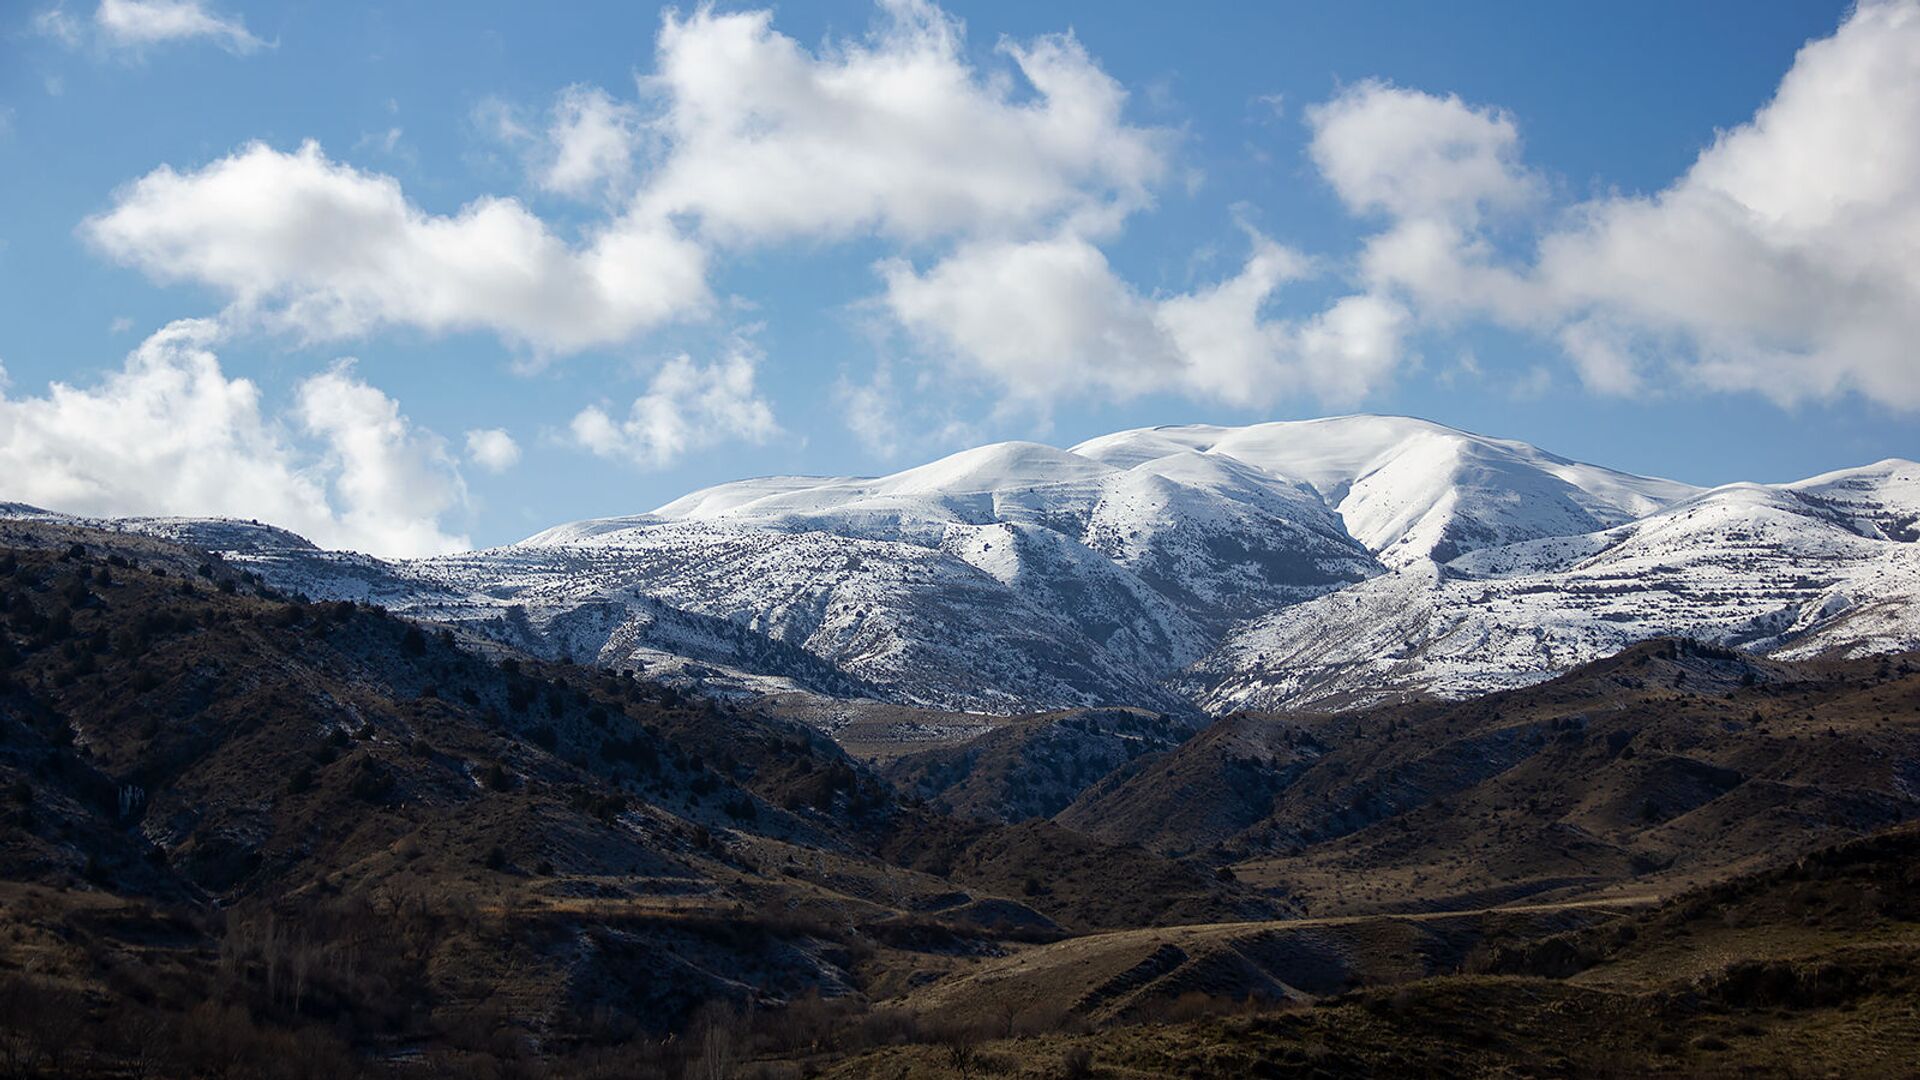 Հայաստանի լեռնային շրջաններում այս գիշեր ջերմաստիճանը կհասնի -1 աստիճանի, սպասվում է թաց ձյուն